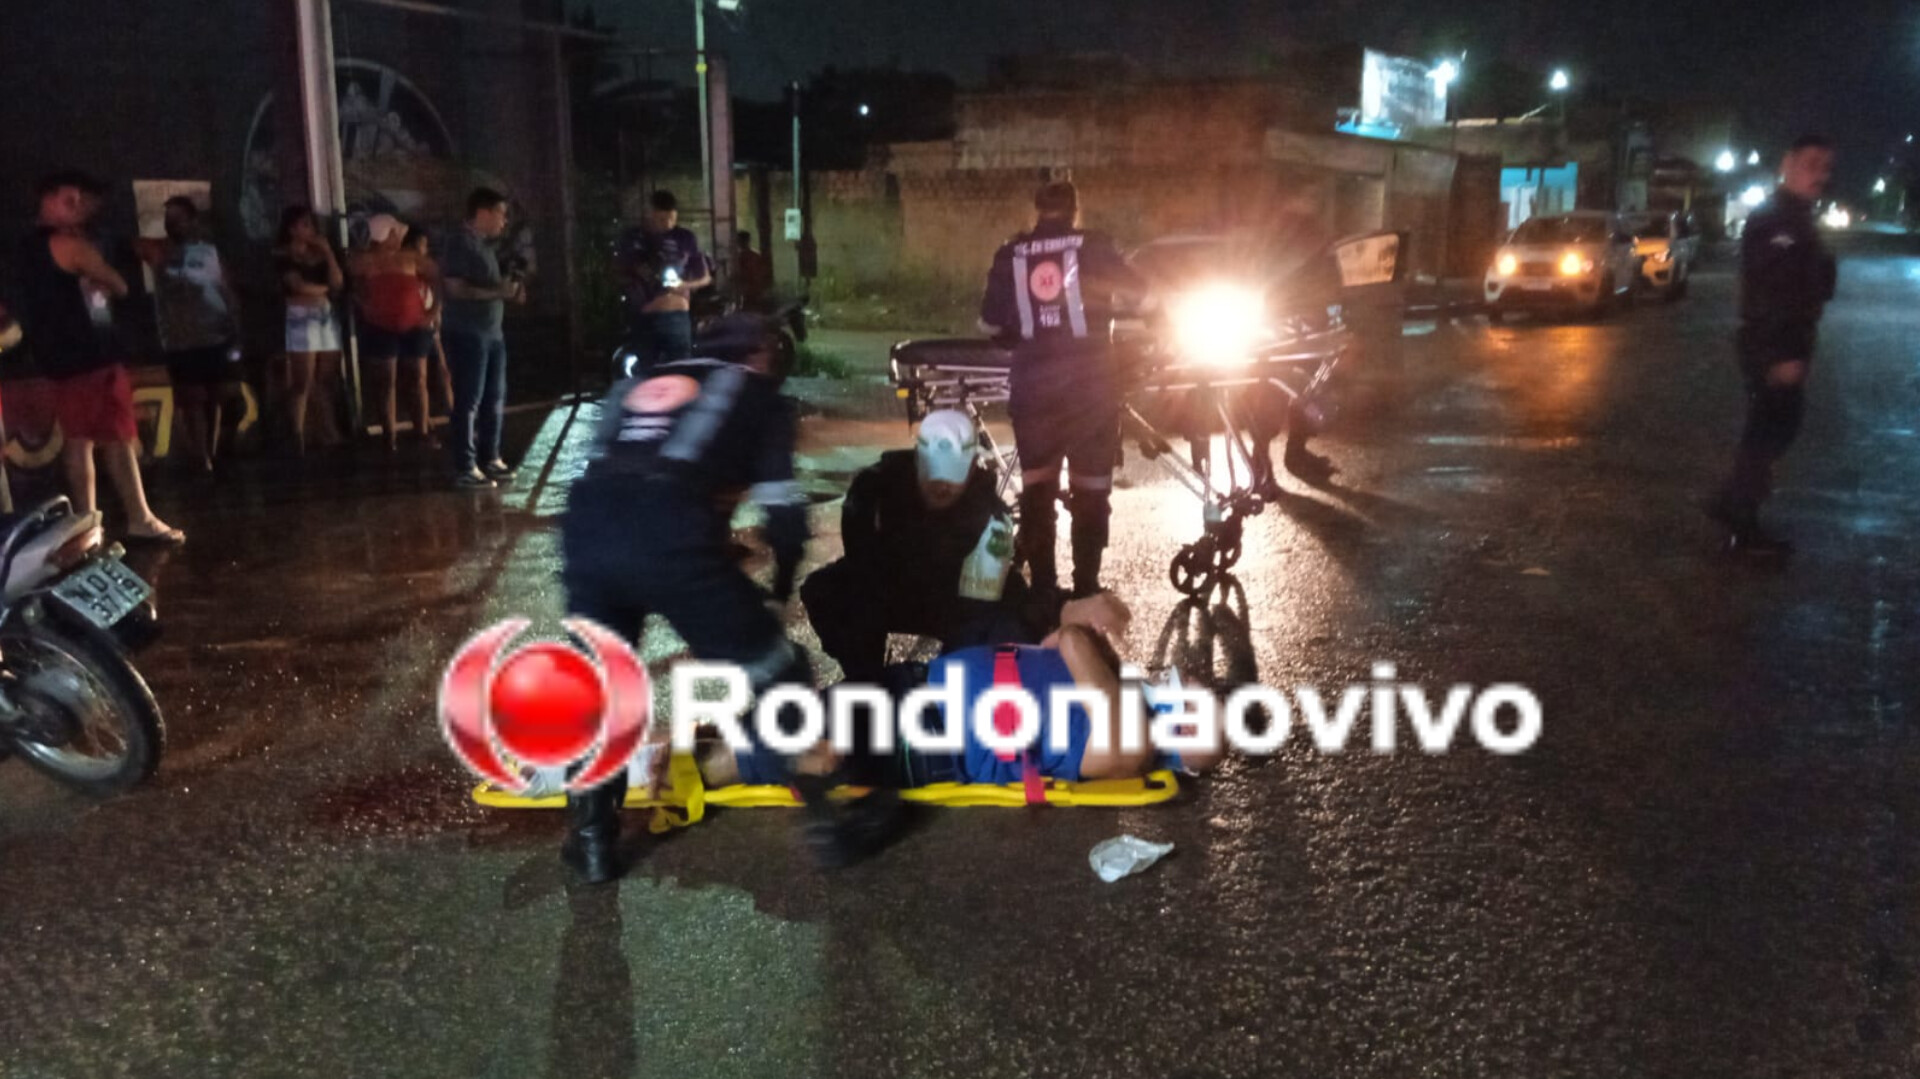 DE FRENTE: Motociclista sofre fratura exposta após grave batida frontal 